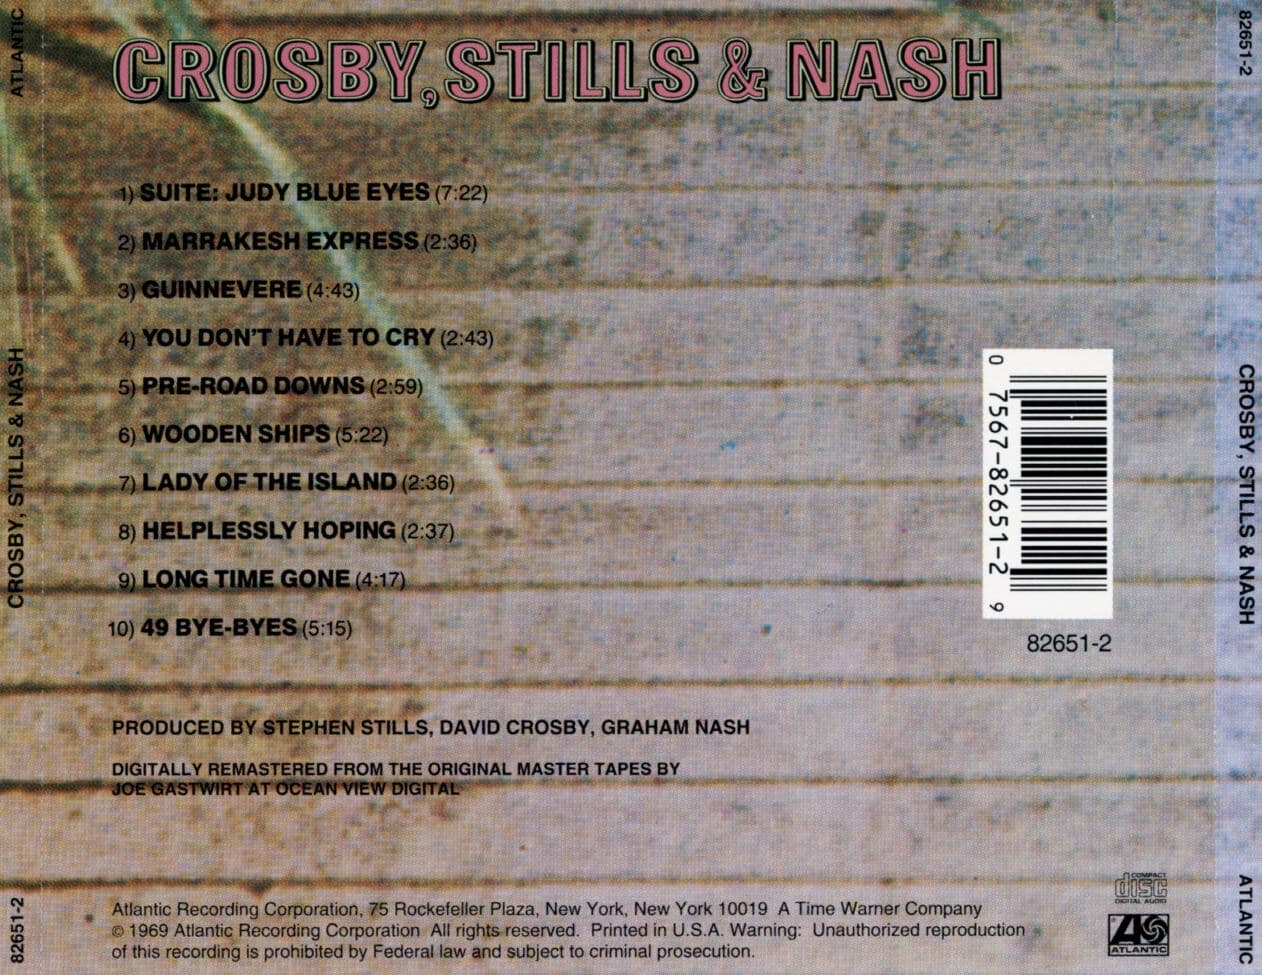 크로스비, 스틸스 & 내시 - Crosby, Stills & Nash - Crosby, Stills & Nash [U.S발매]